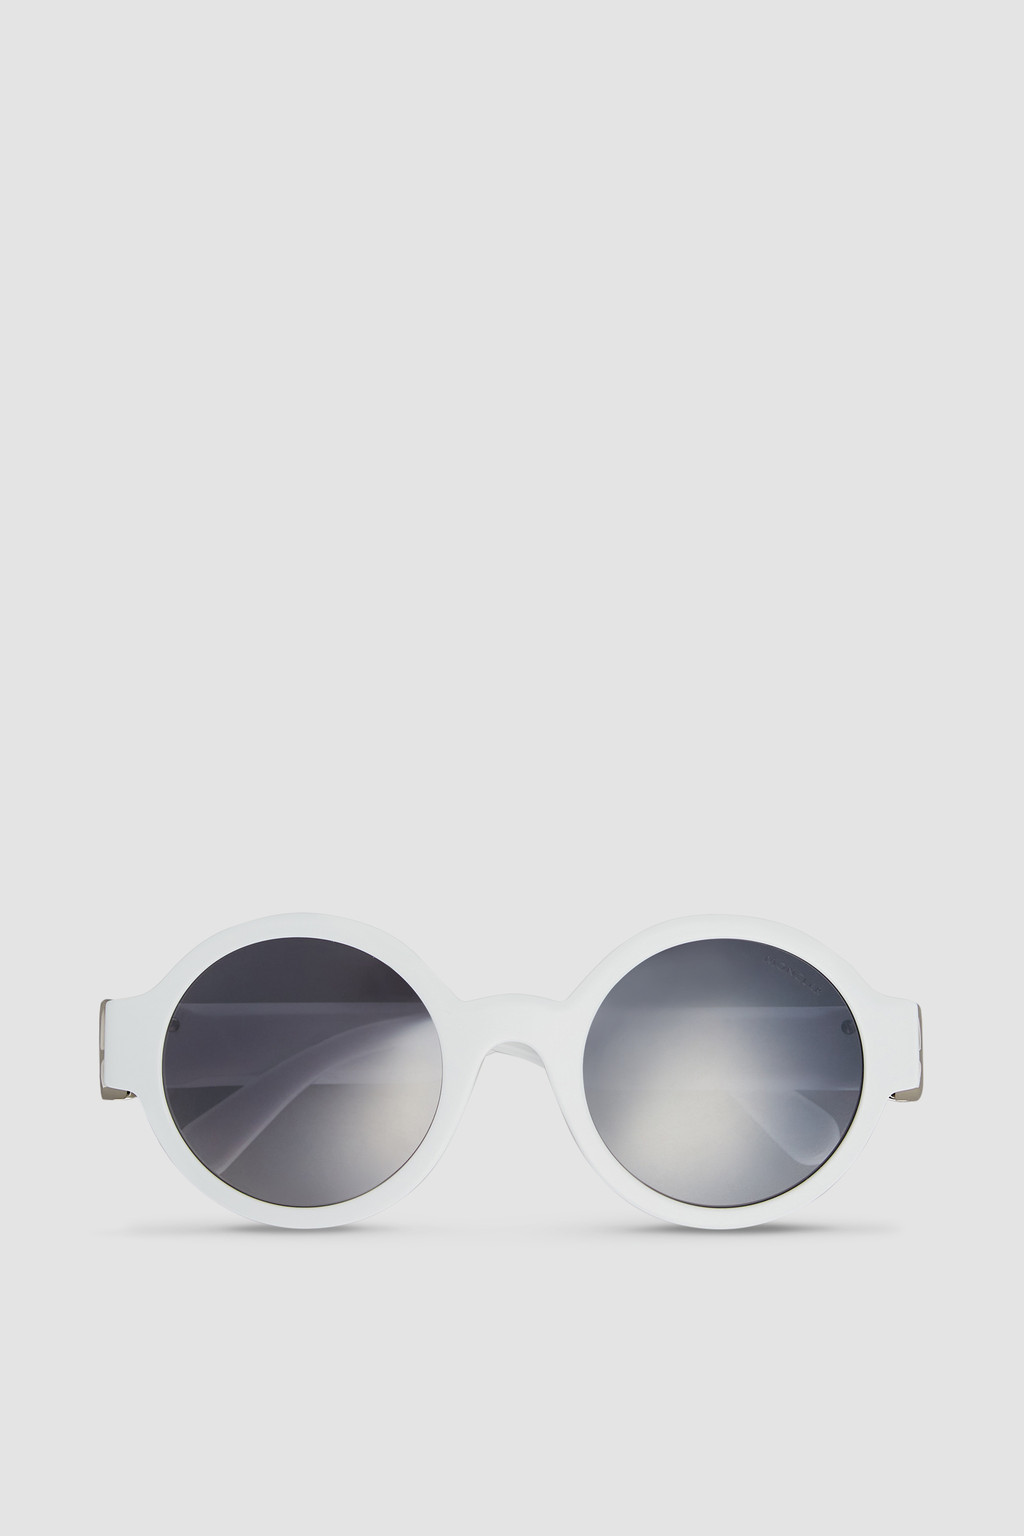 CDior Sunglasses - Accessories - Women's Fashion | DIOR